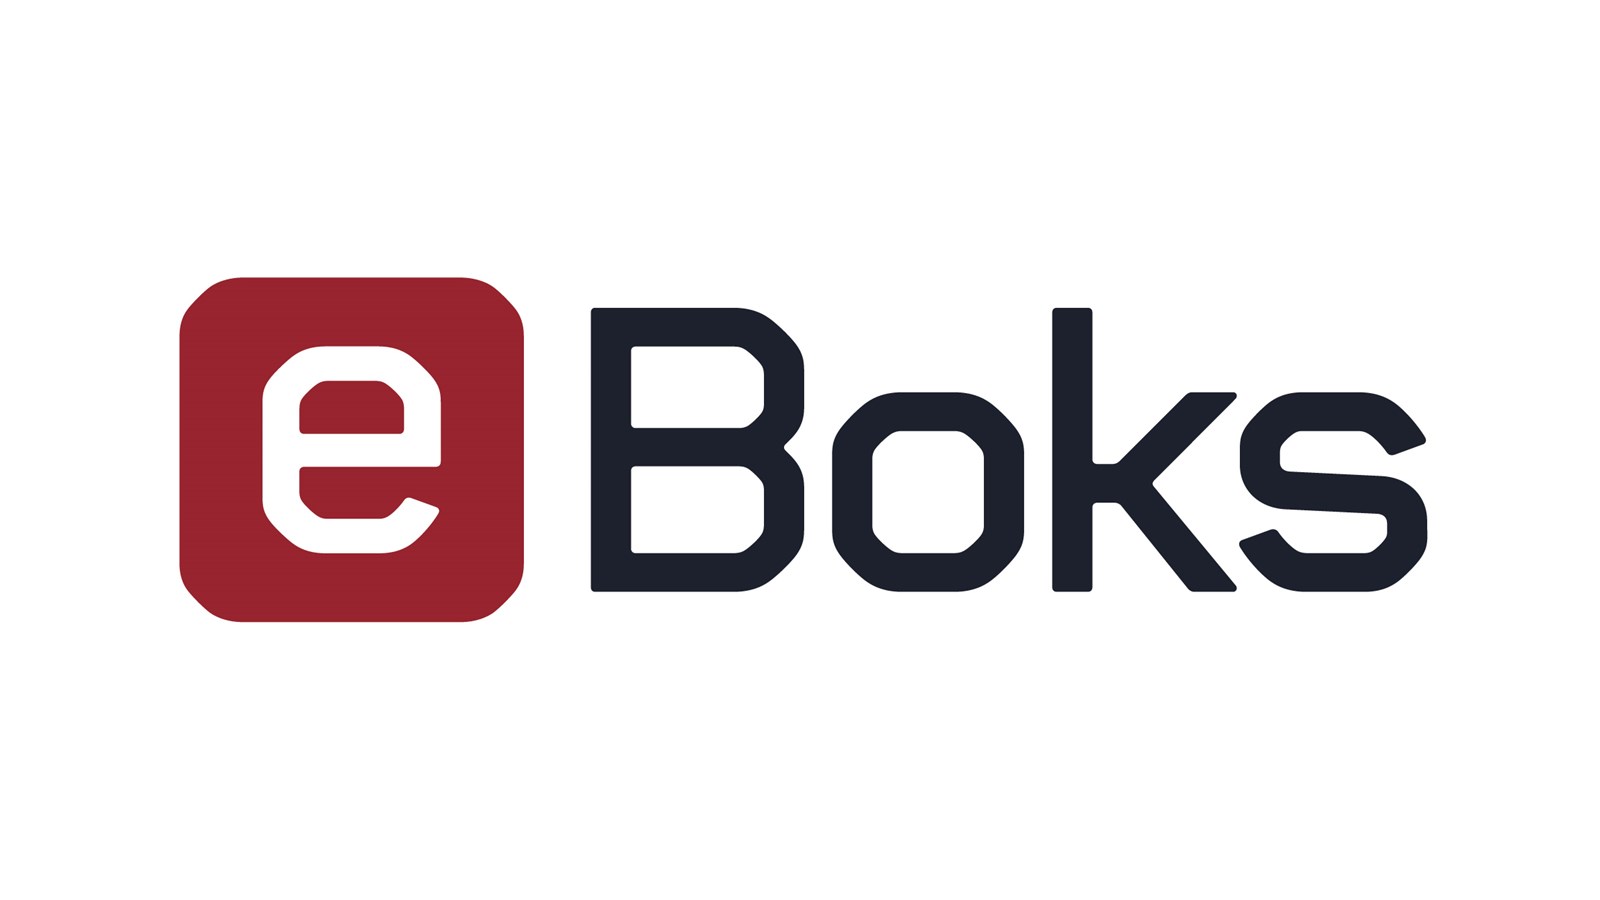 eboks logo